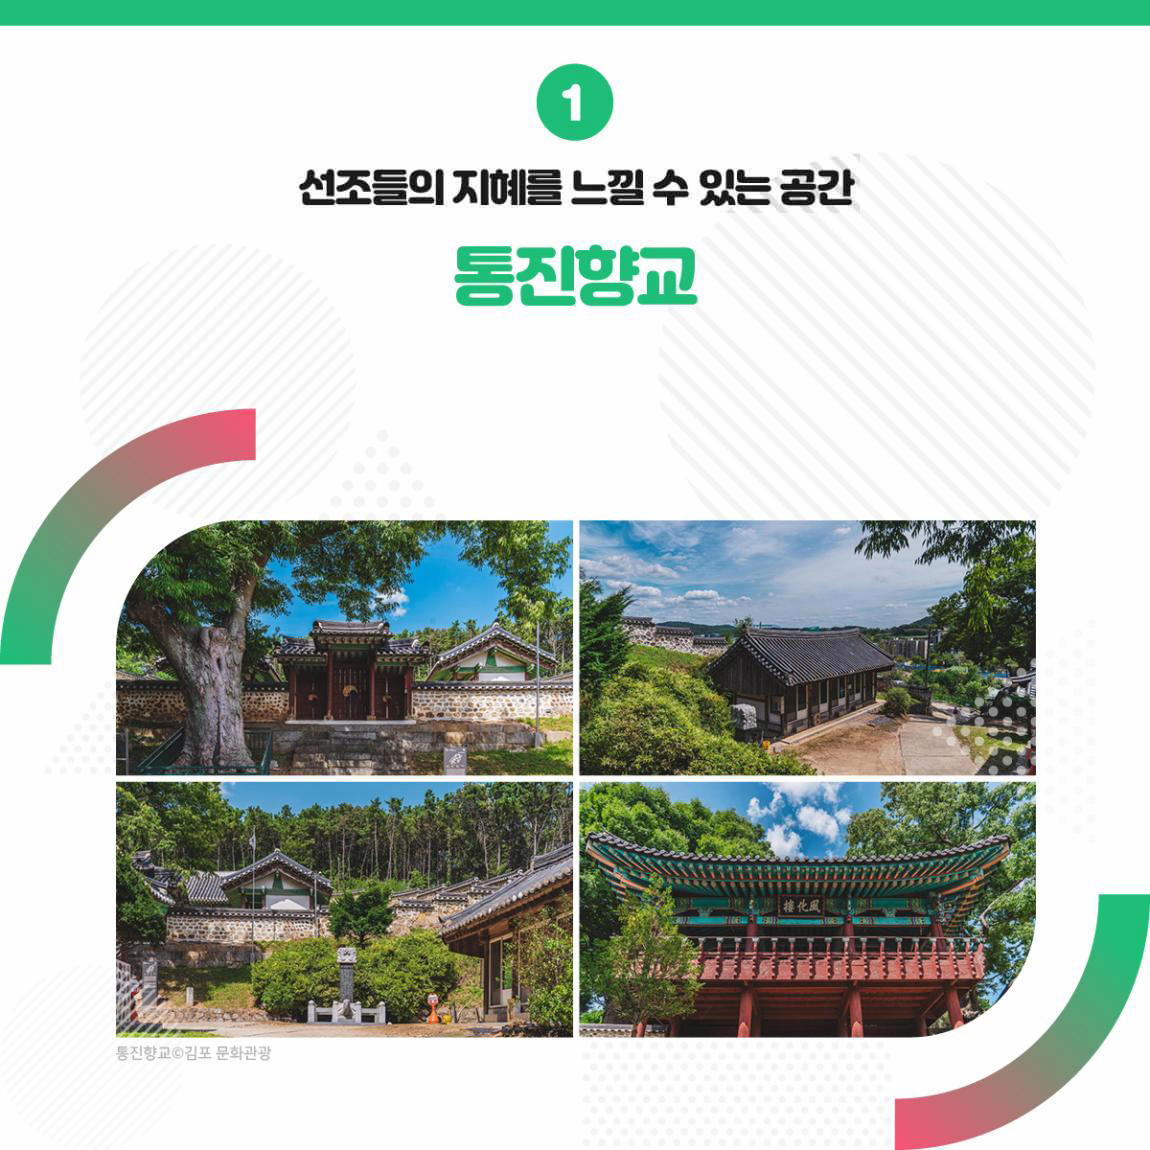 선조들의 지혜를 느낄 수 있는 공간 통진향교 출처 김포 문화관광